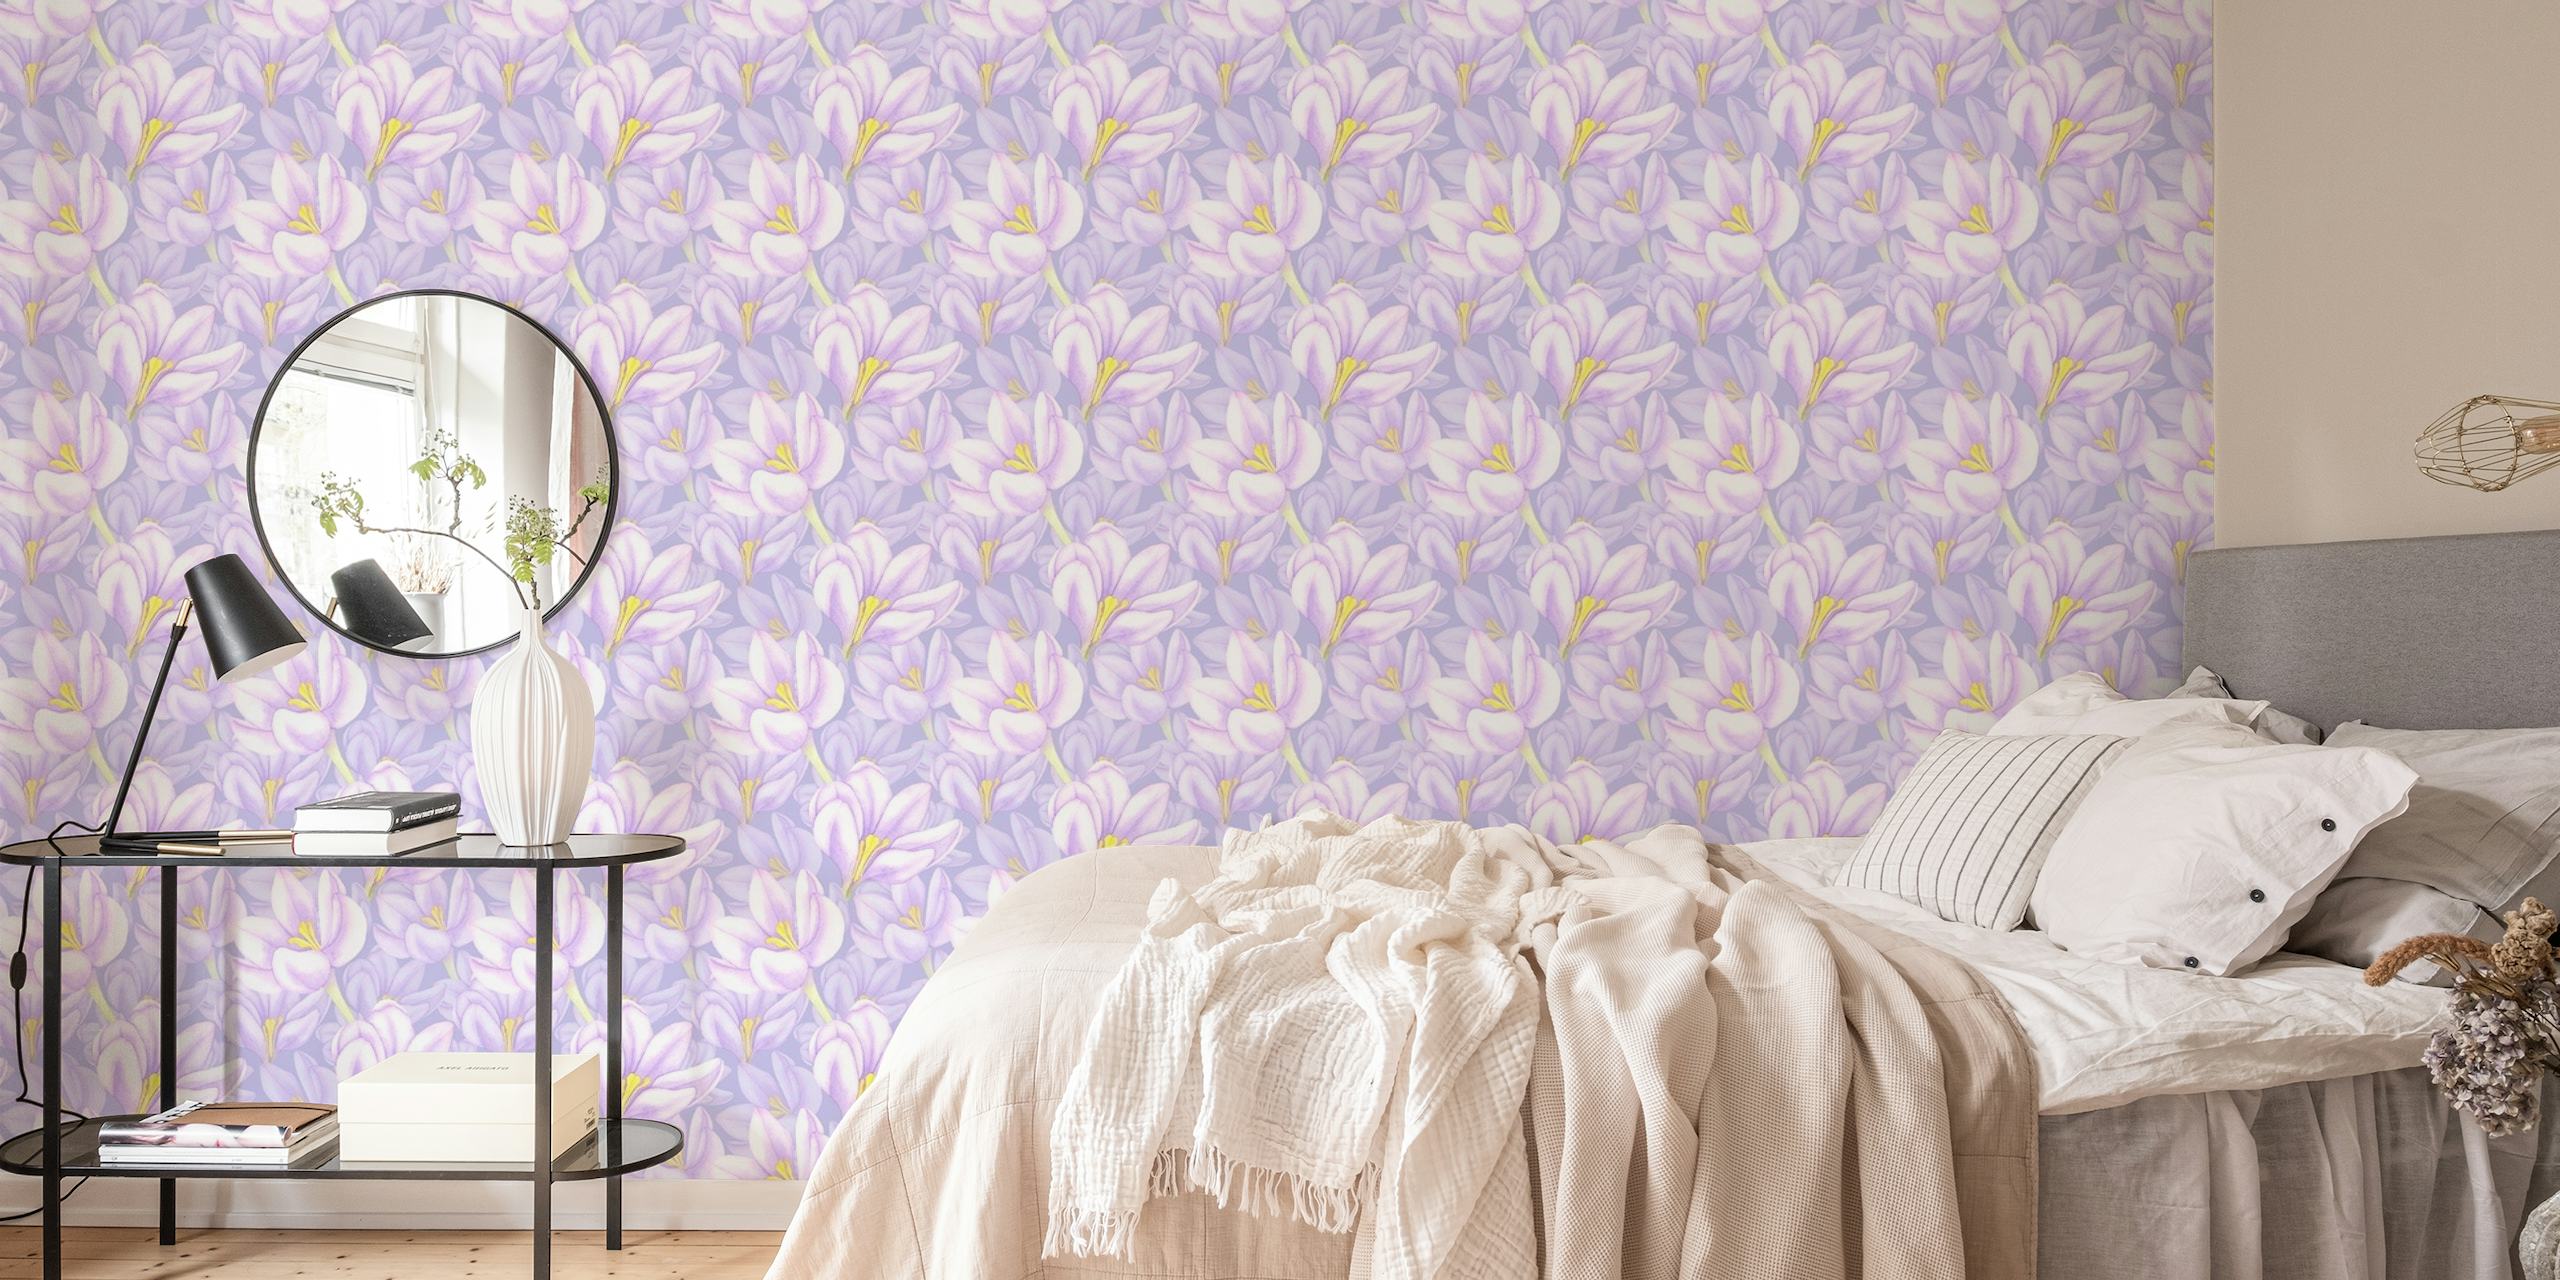 Saffron flowers petals wallpaper